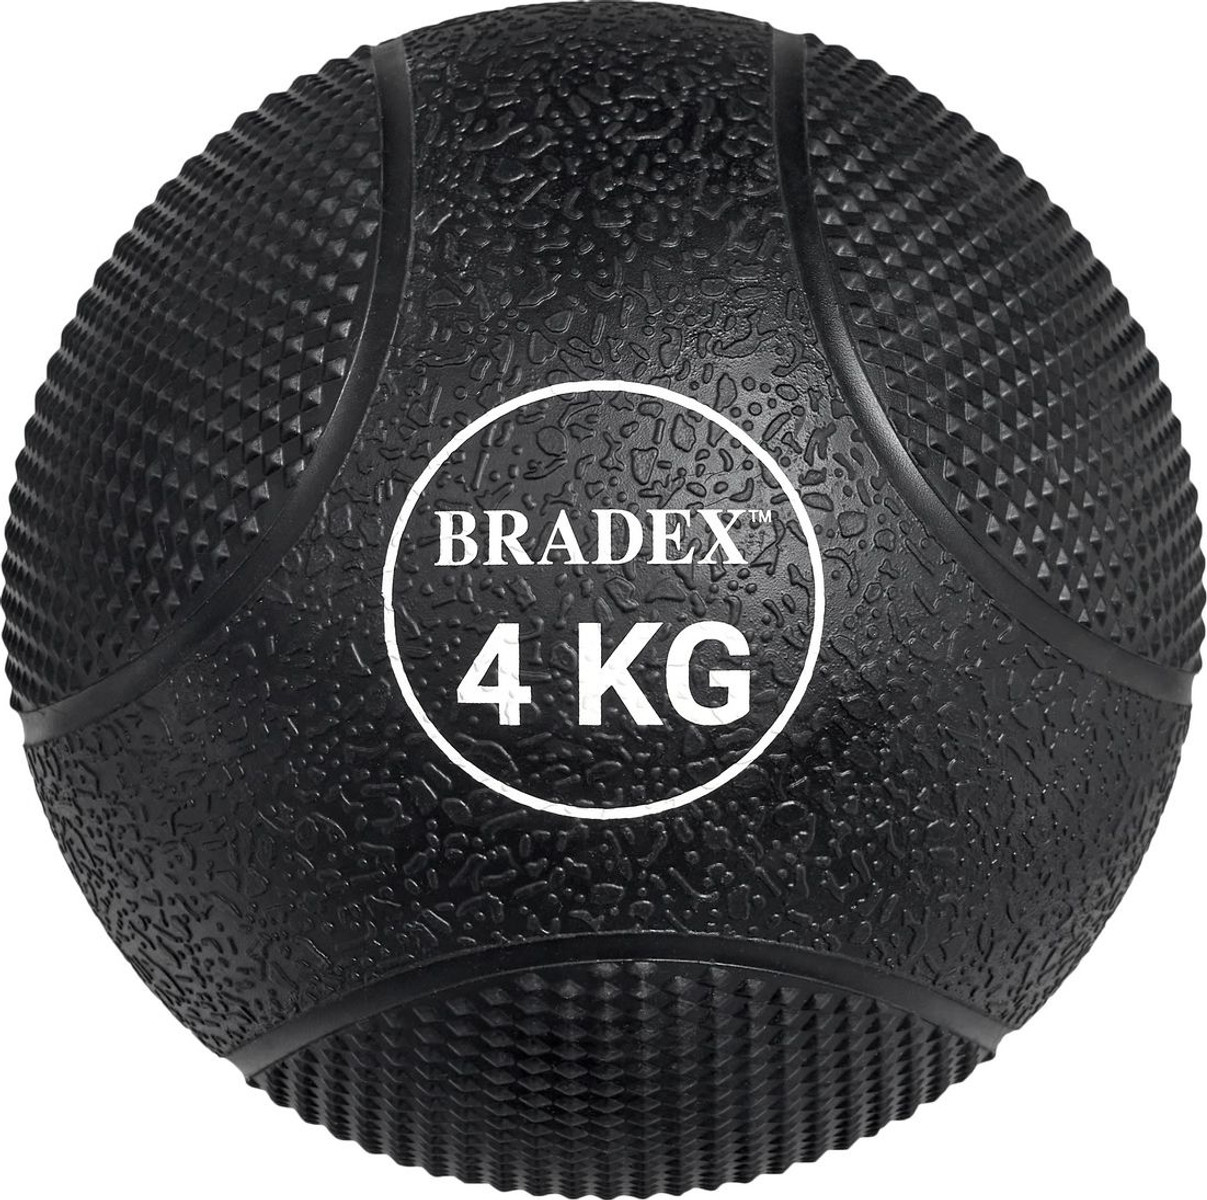 Мяч Bradex SF 0773 (4 кг)